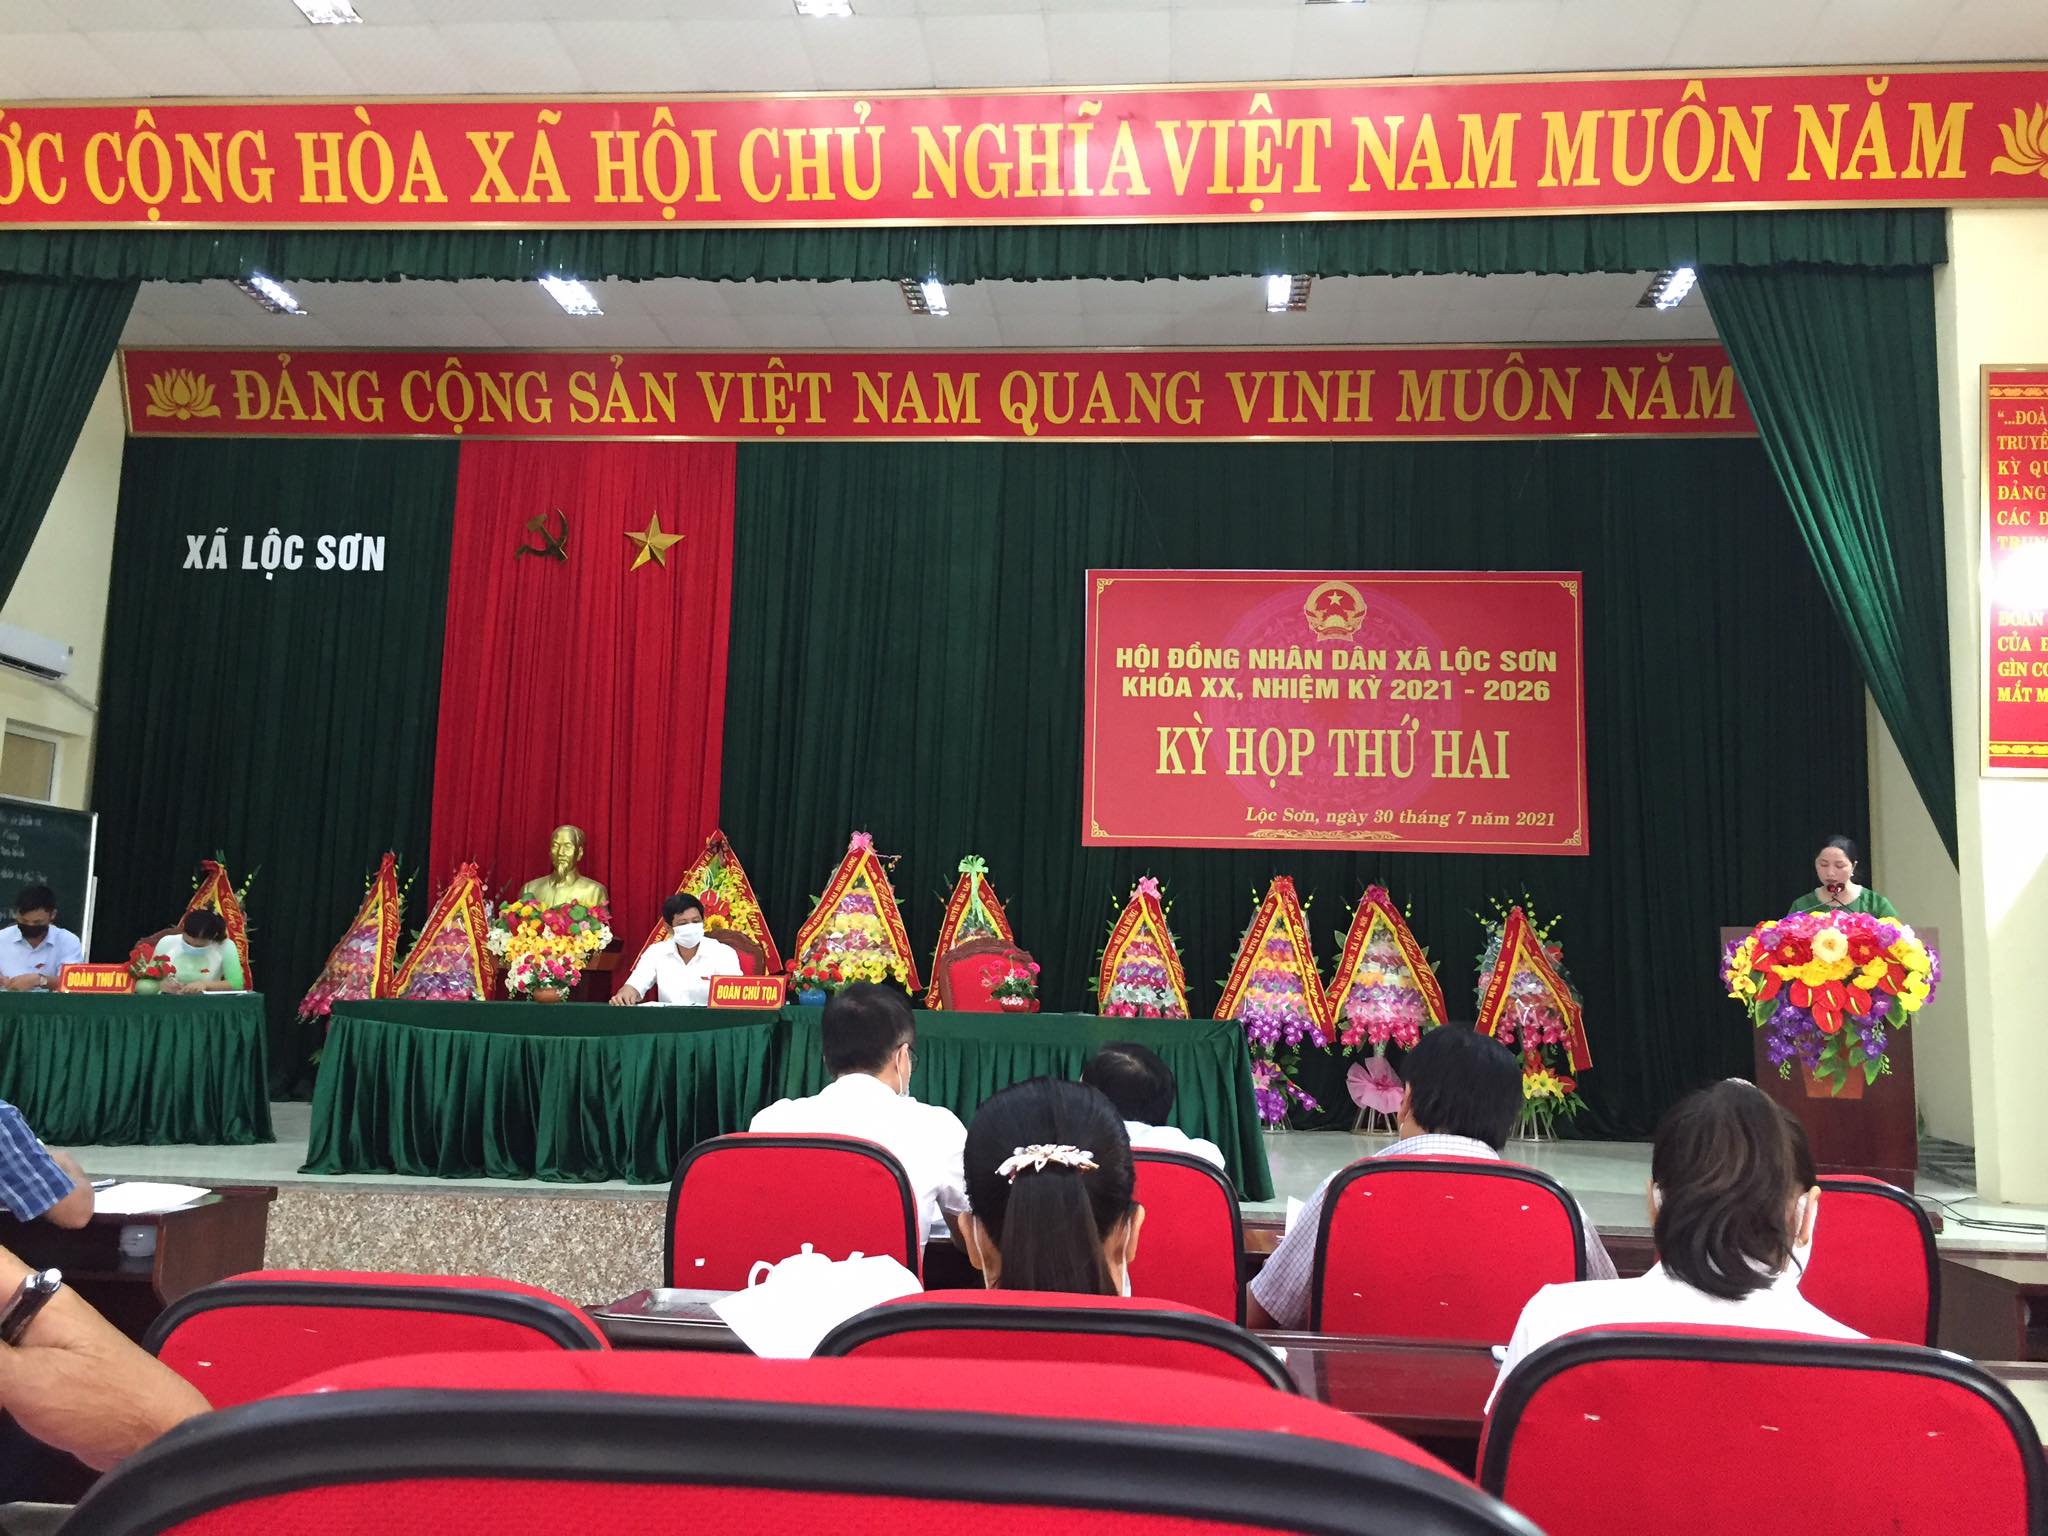 Kỳ họp thứ 2 Hội đồng nhân dân xã Lộc Sơn khóa XX, nhiệm kỳ 2021 - 2026